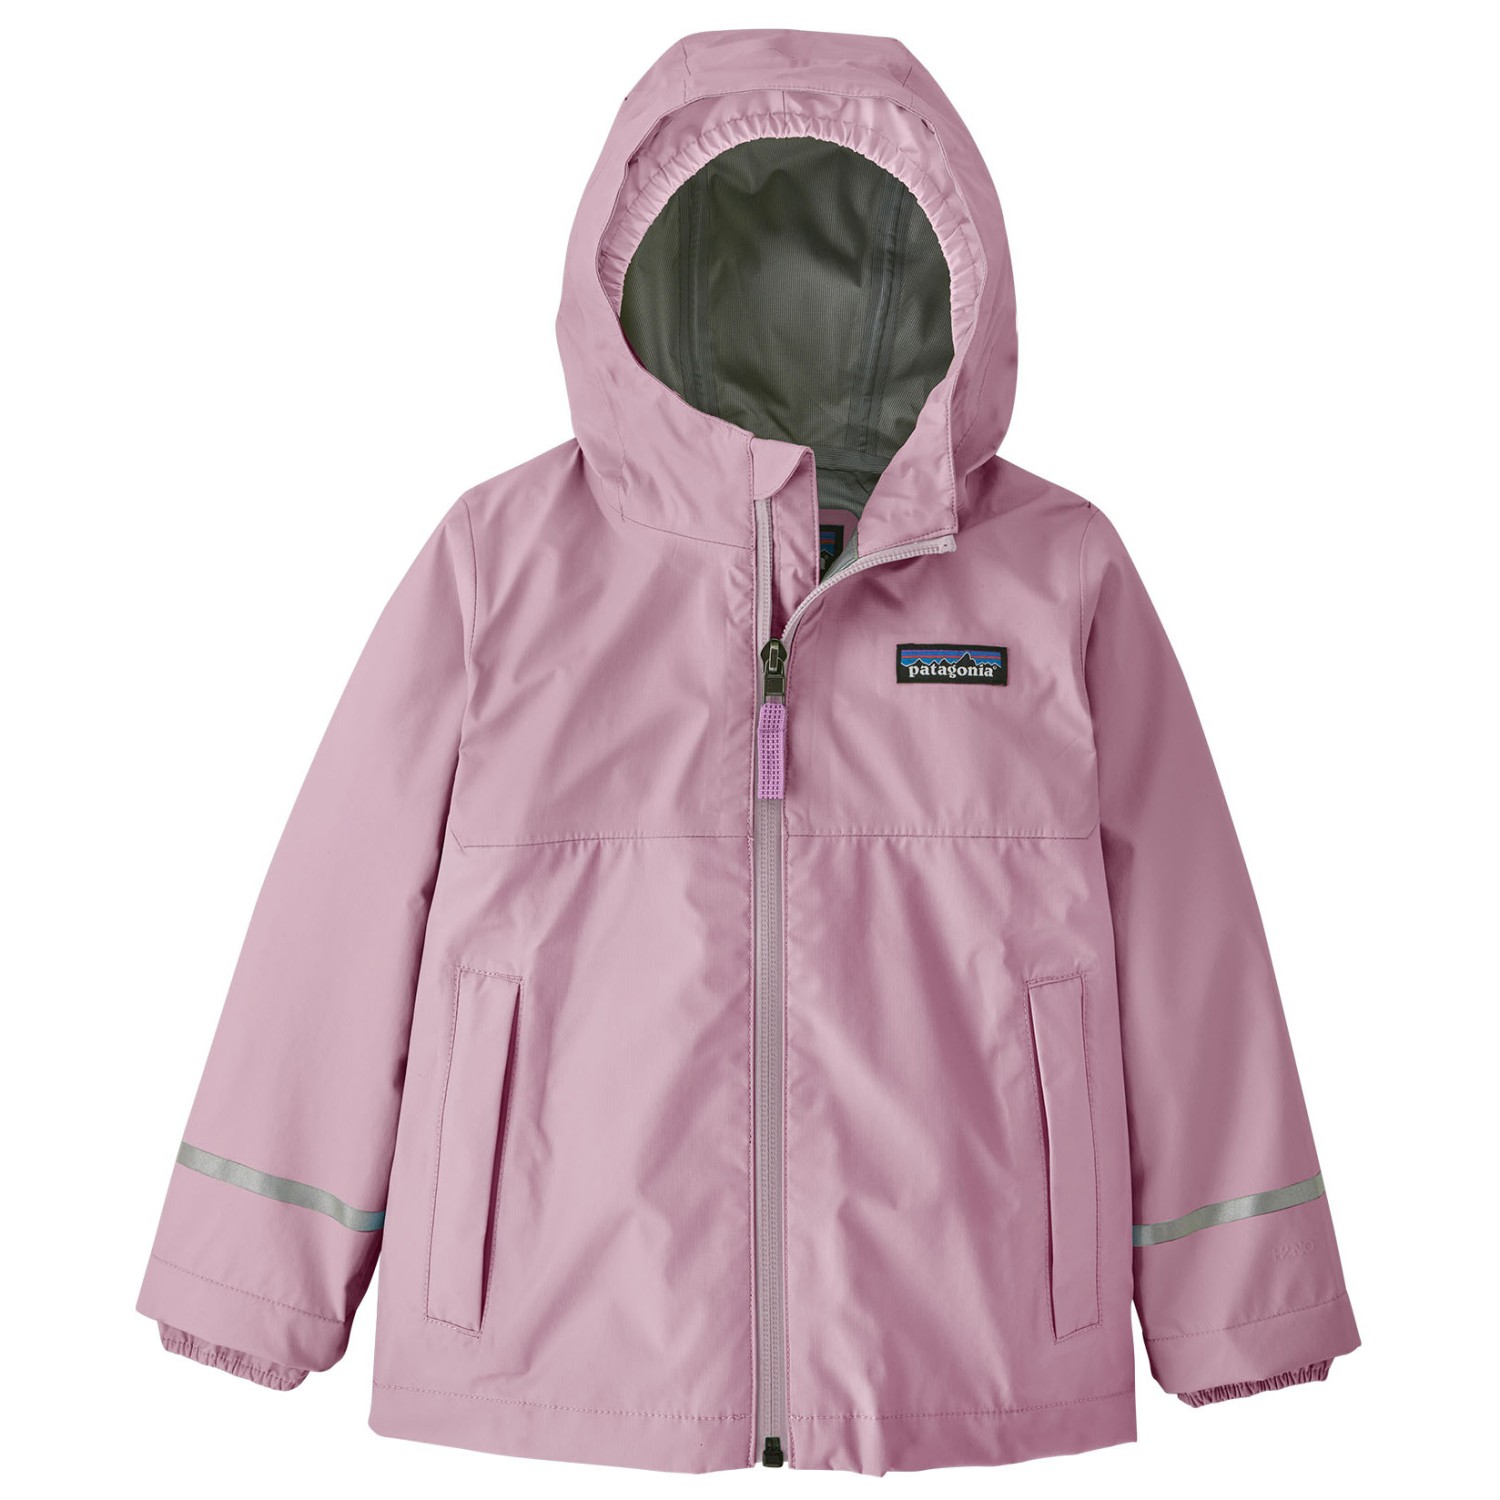 Дождевик Patagonia Baby's Torrentshell 3L, цвет Milkweed Mauve куртка patagonia men s torrentshell 3l jacket s